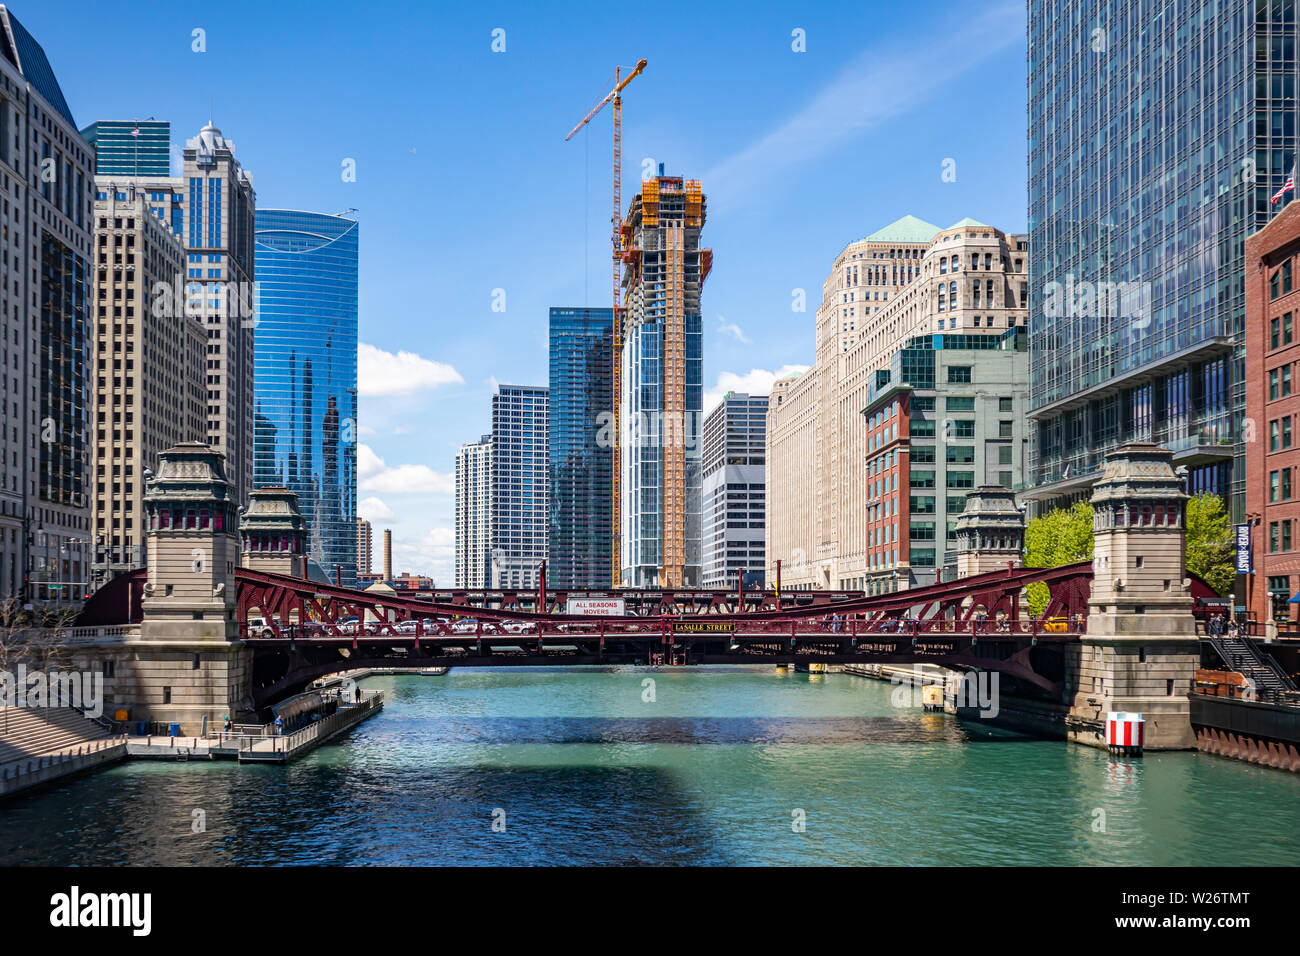 Stati Uniti d'America, Chicago, Illinois. Maggio 10, 2019. La Salle street bridge, Chicago city edifici alti, giorno di primavera, cielo blu sullo sfondo Foto Stock